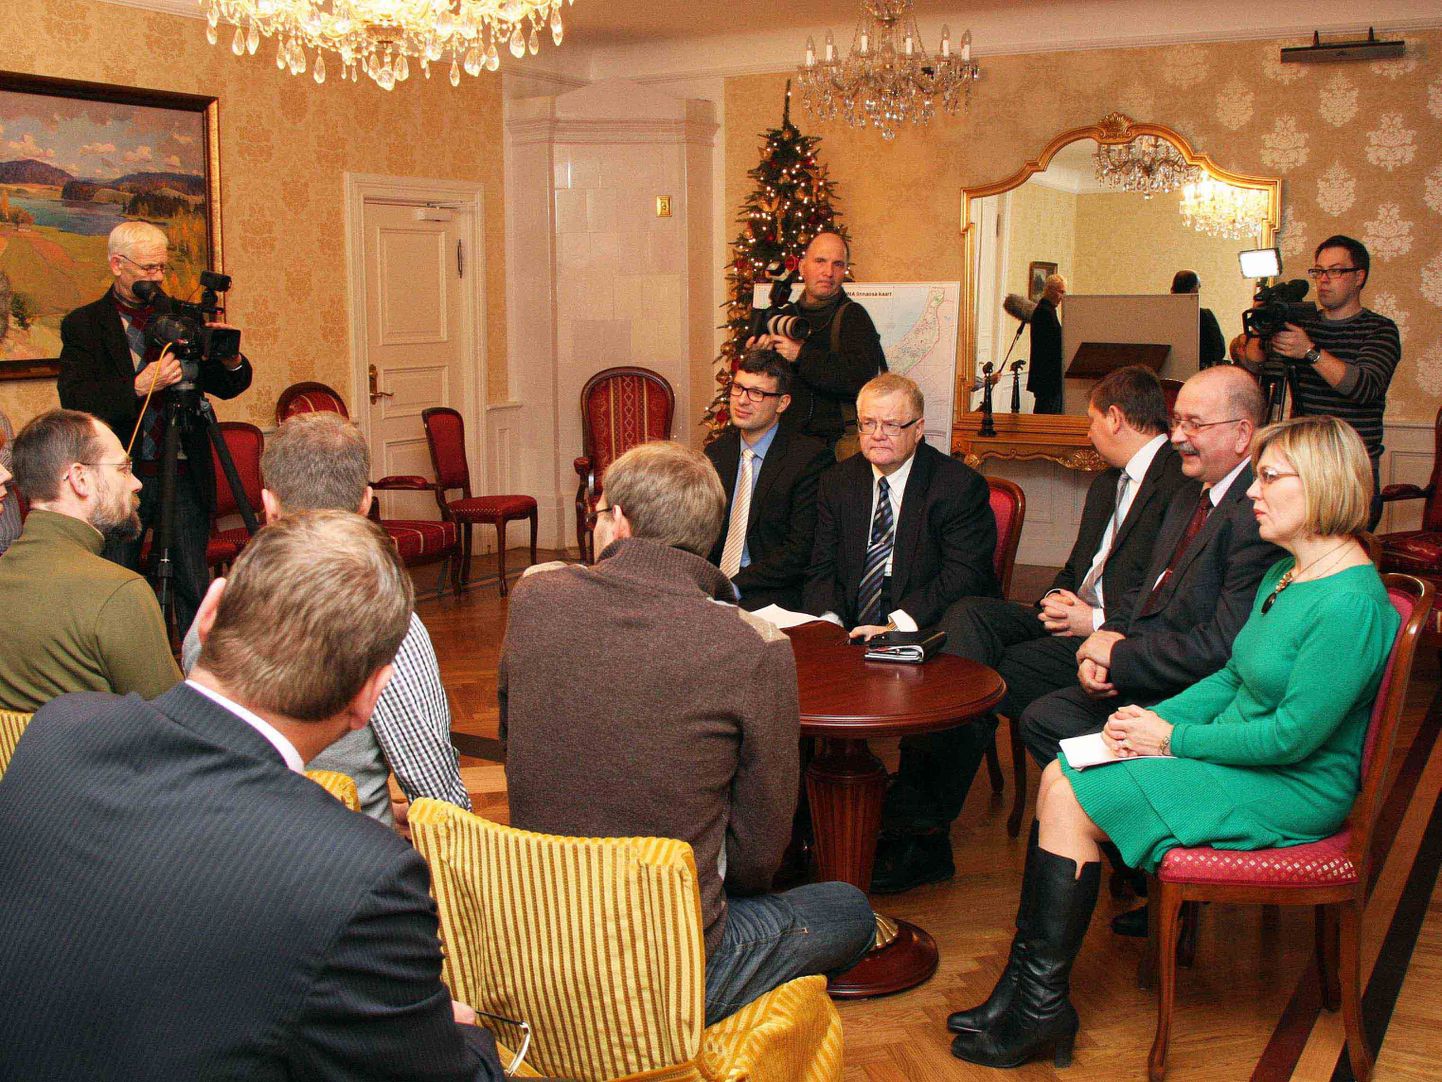 Сависаар на встрече с представителями квартирных товариществ Кадриорга.